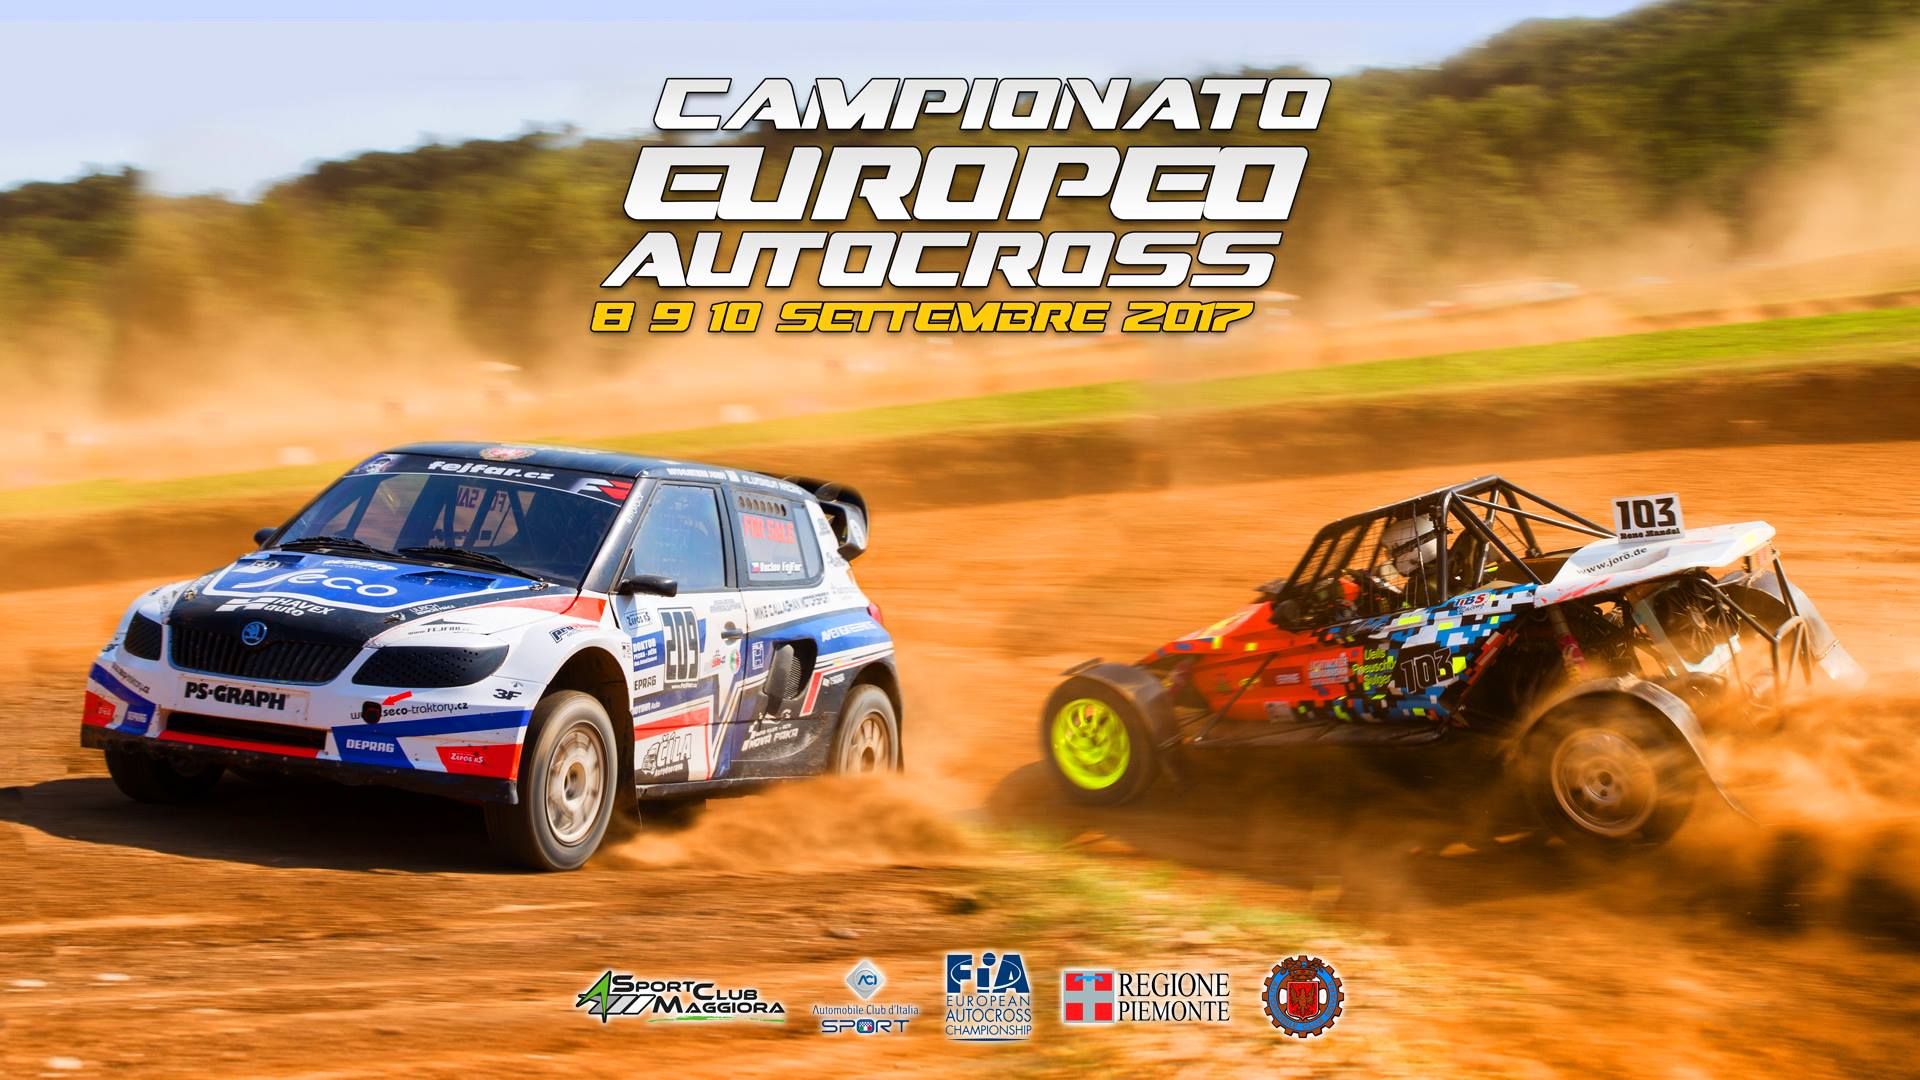 Tutti a Maggiora con Mattia Donolato: in programma Kartcross e il Campionato Europeo di Autocross!